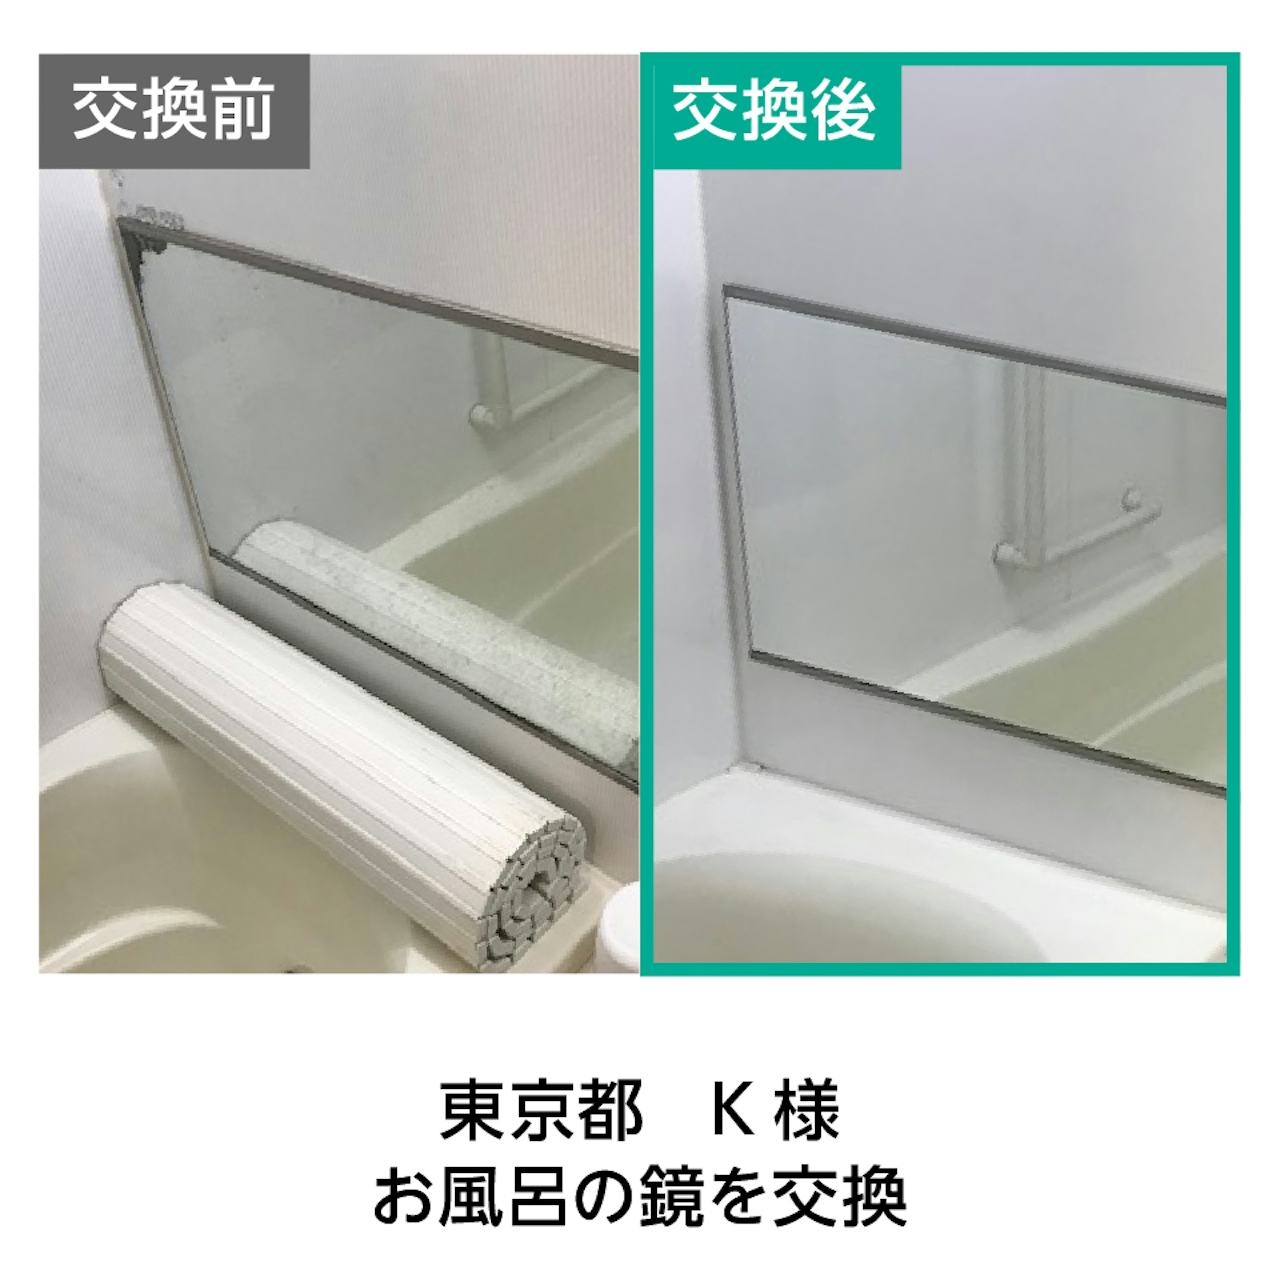 ウロコ(水垢)がついたお風呂の鏡を交換した事例(3)